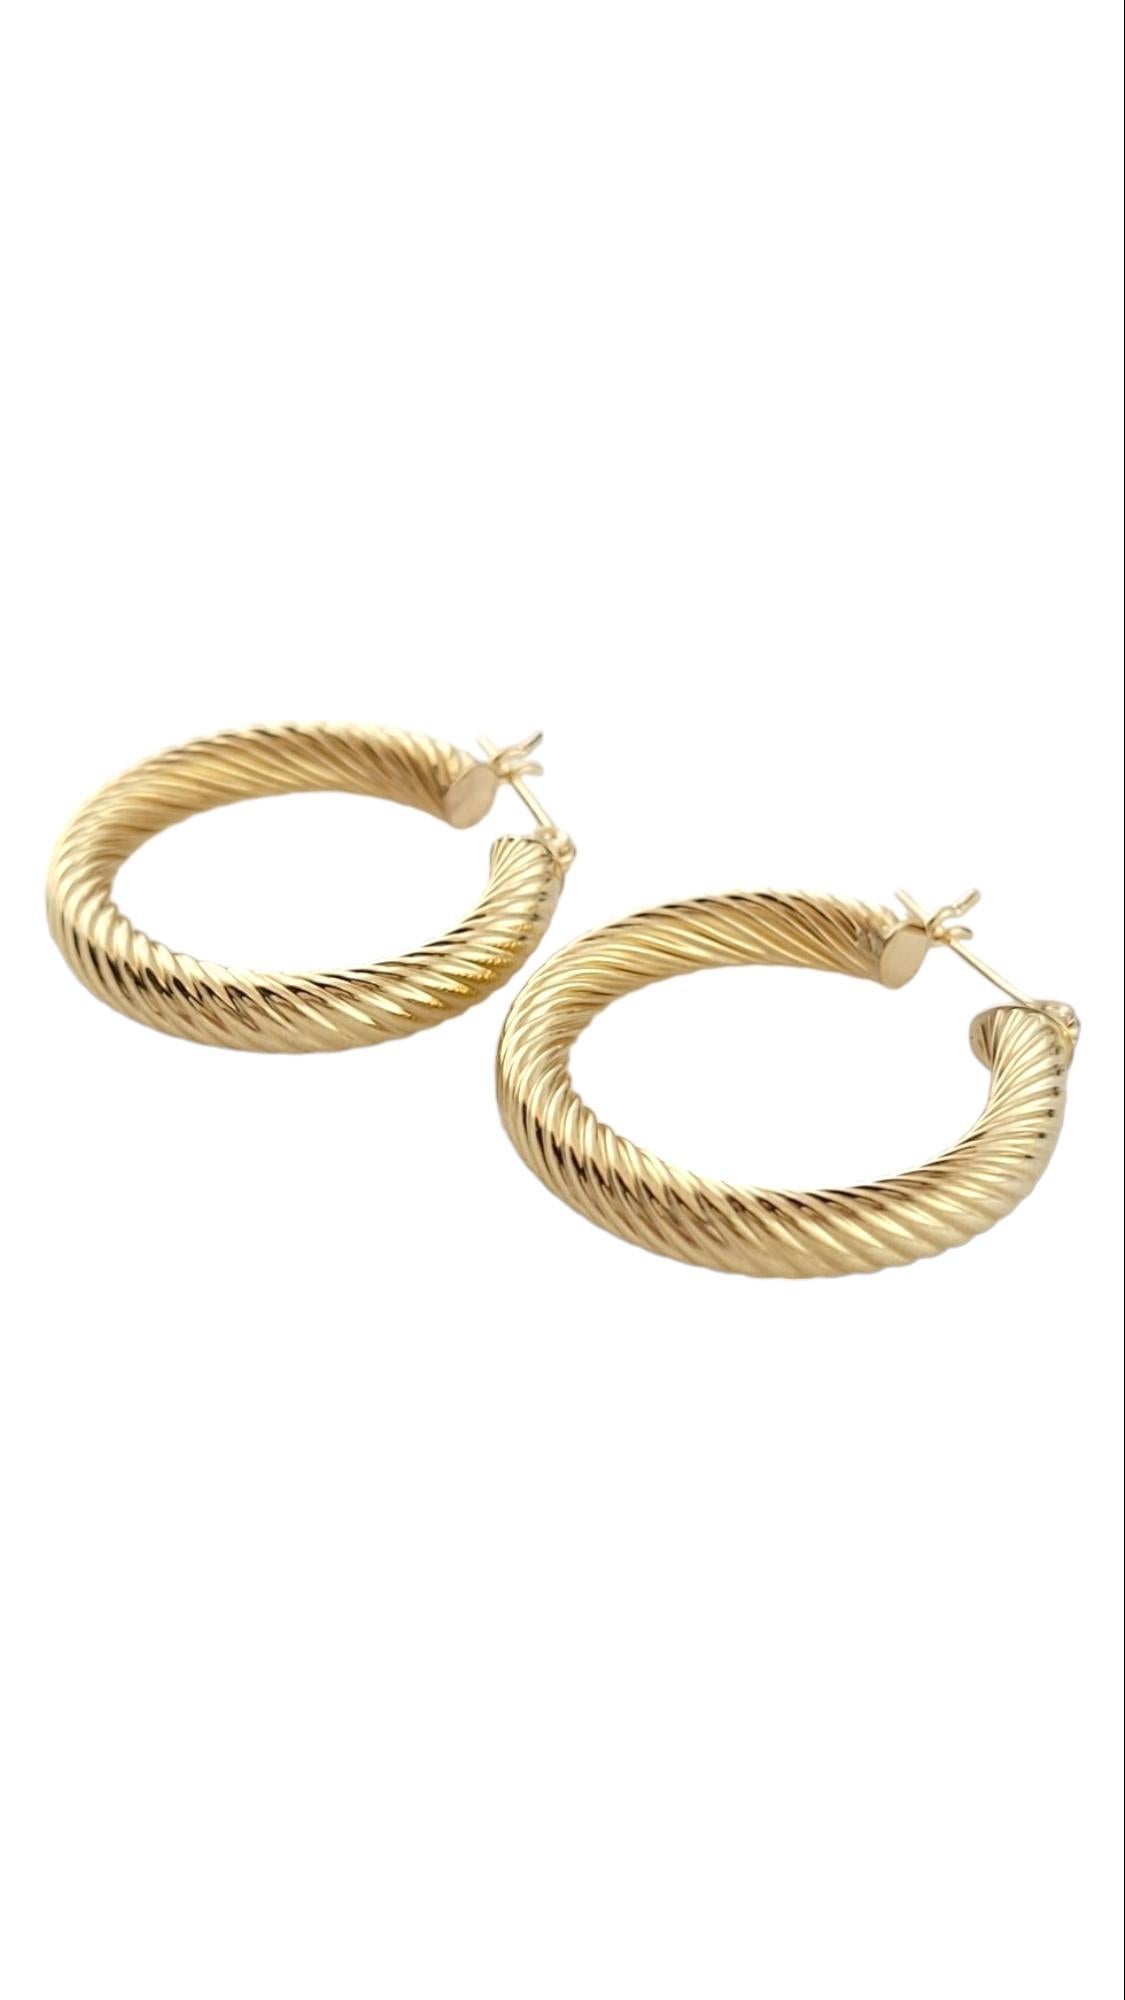 Boucles d'oreilles en or jaune 14K avec câble

Ce magnifique ensemble d'anneaux présente un délicat motif torsadé pour une belle finition.

Diamètre : 25.4mm / 1